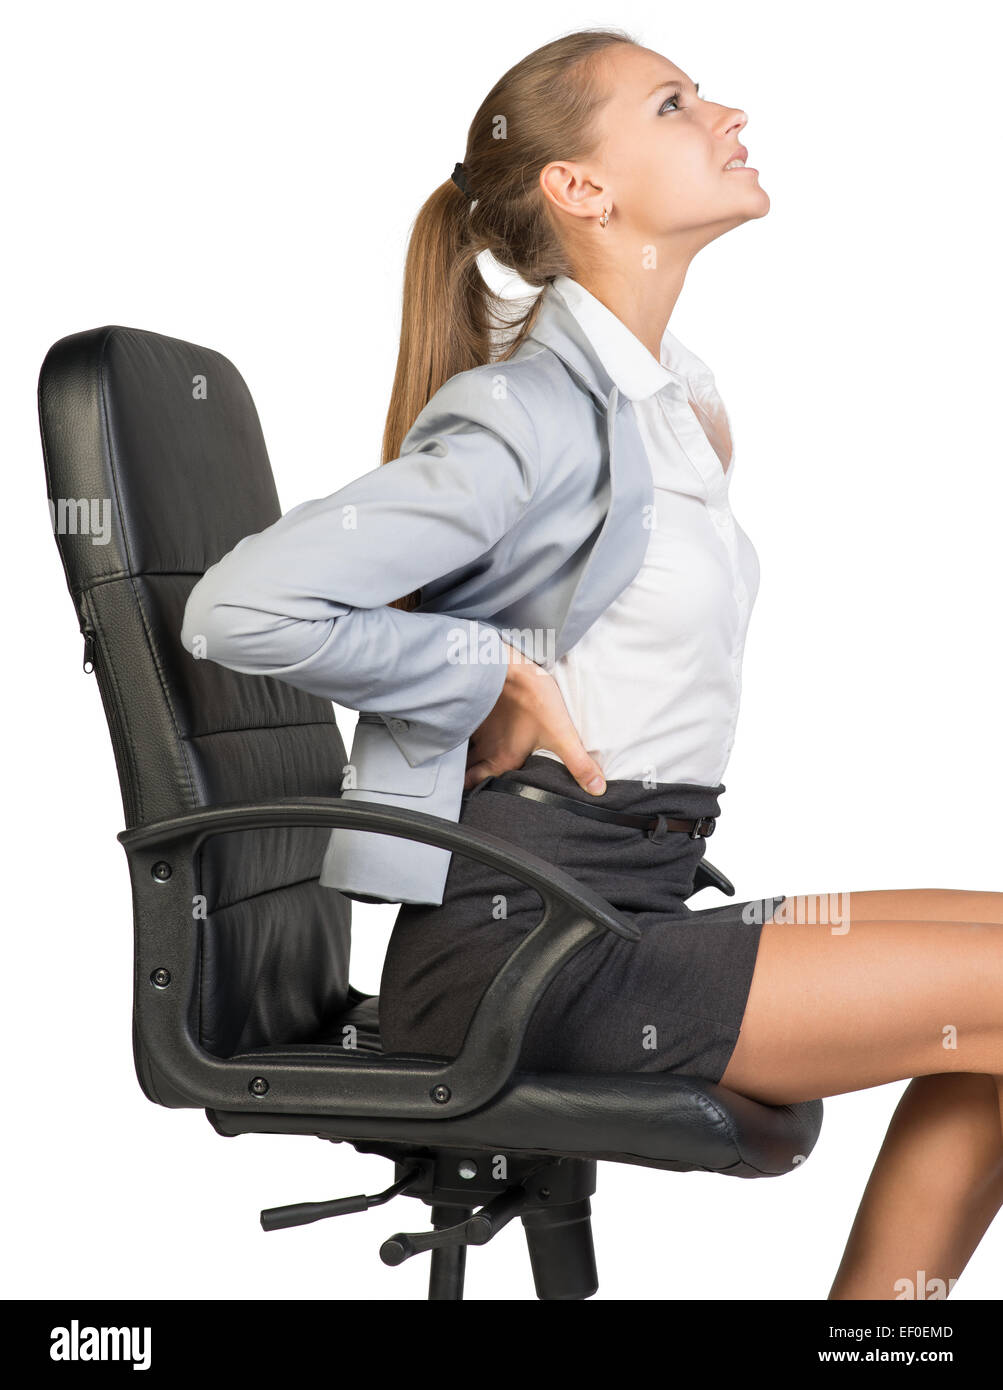 Geschäftsfrau mit Schmerzen im unteren Rücken durch das sitzen auf dem Bürostuhl Stockfoto